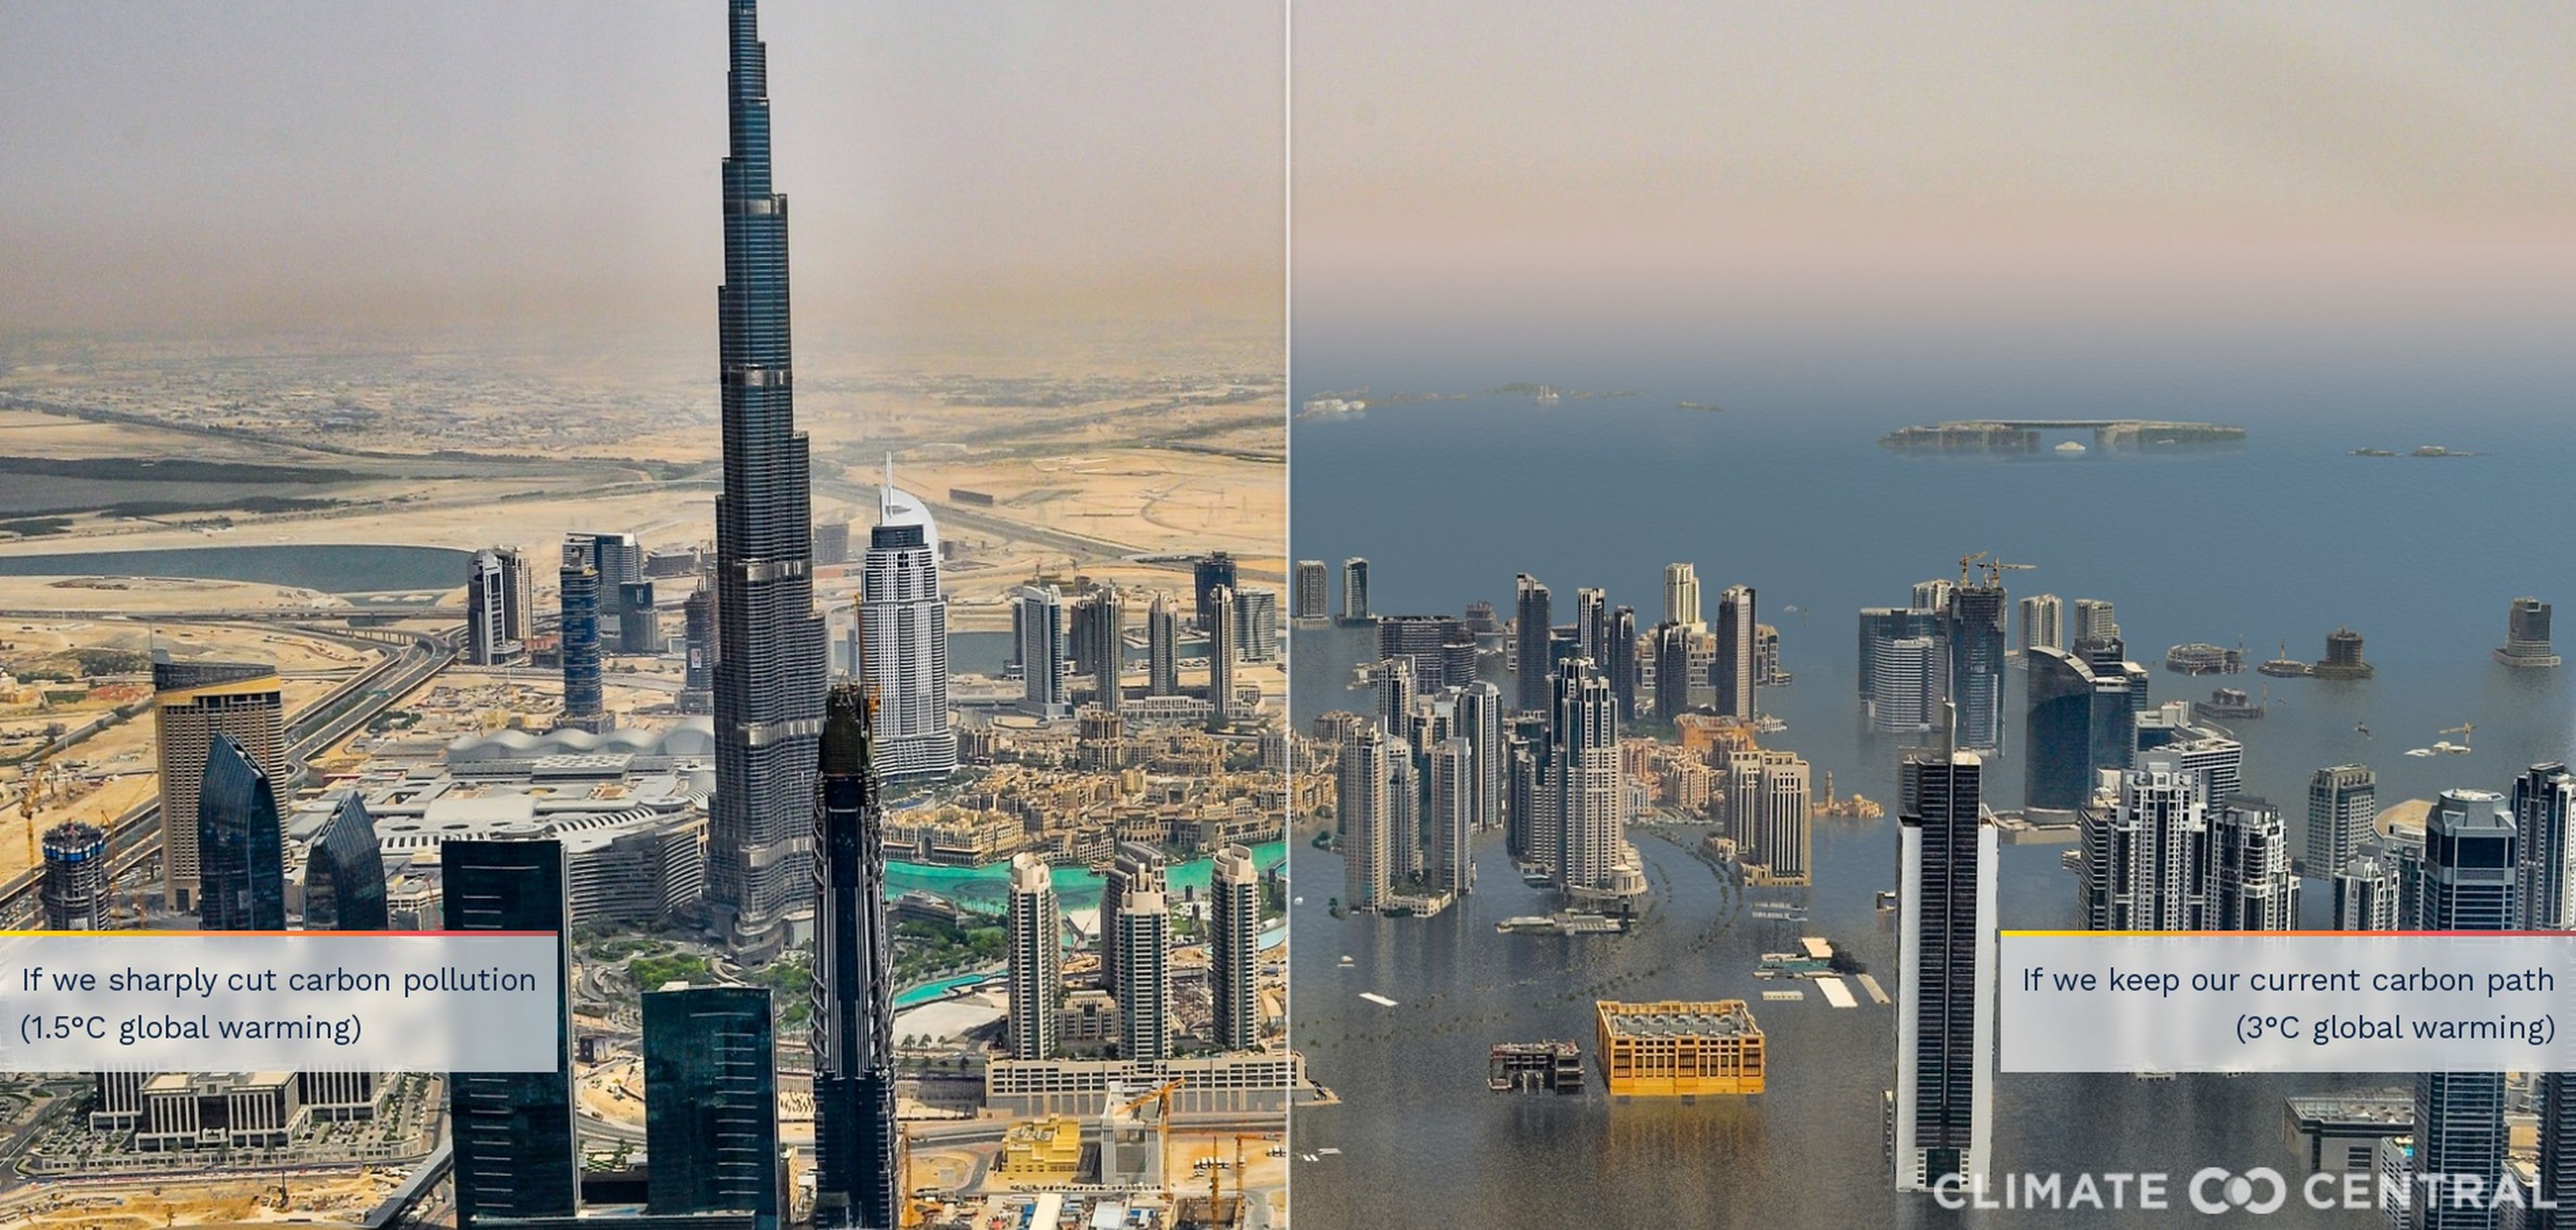 Representación de Dubái si aumentara el nivel del mar con el edificio Burj Khalifa a la izquierda de la imagen.